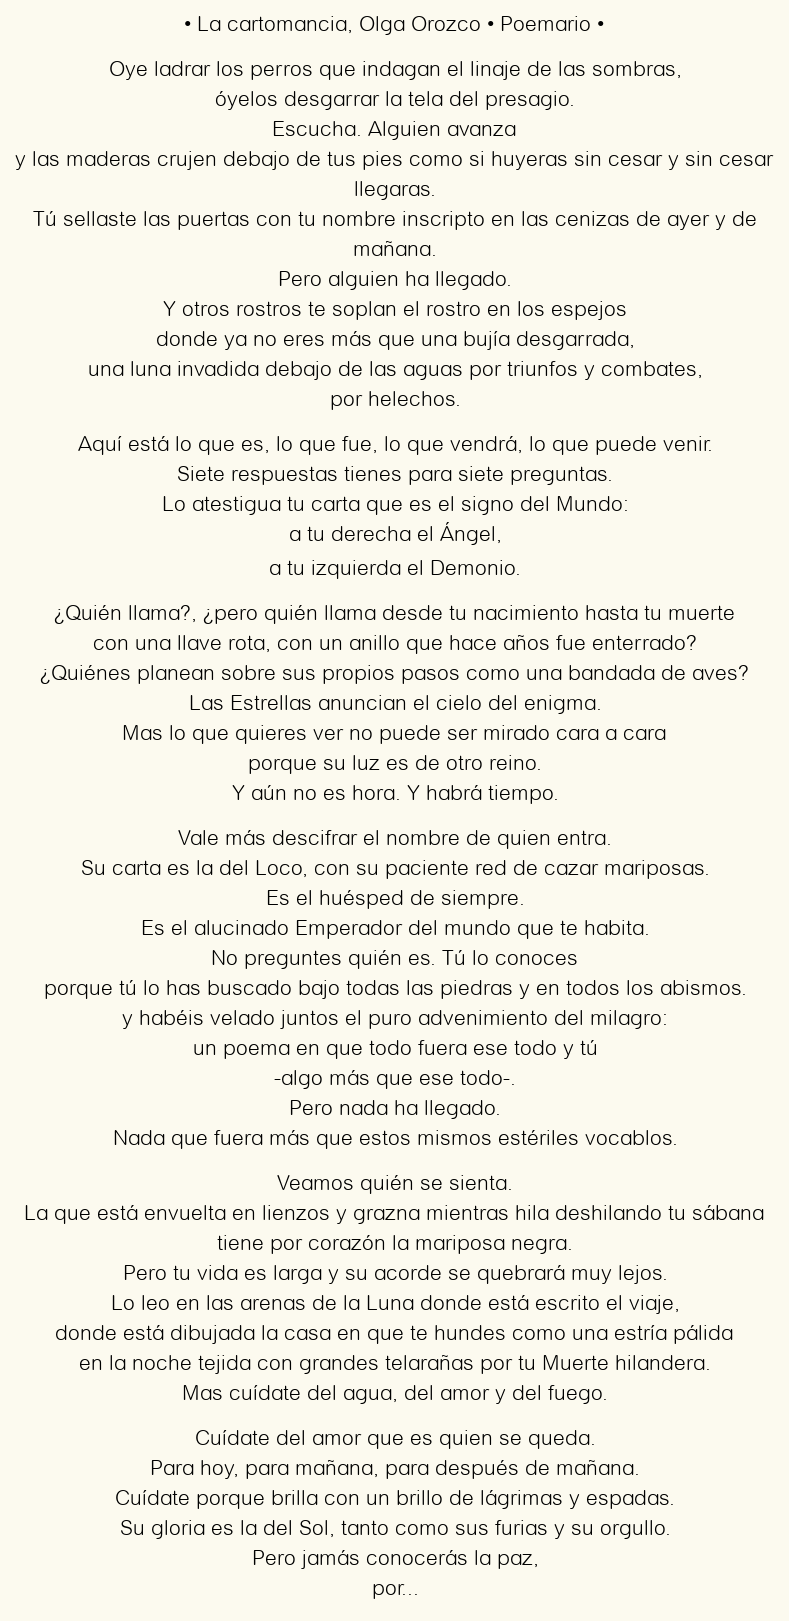 Imagen con el poema La cartomancia, por Olga Orozco